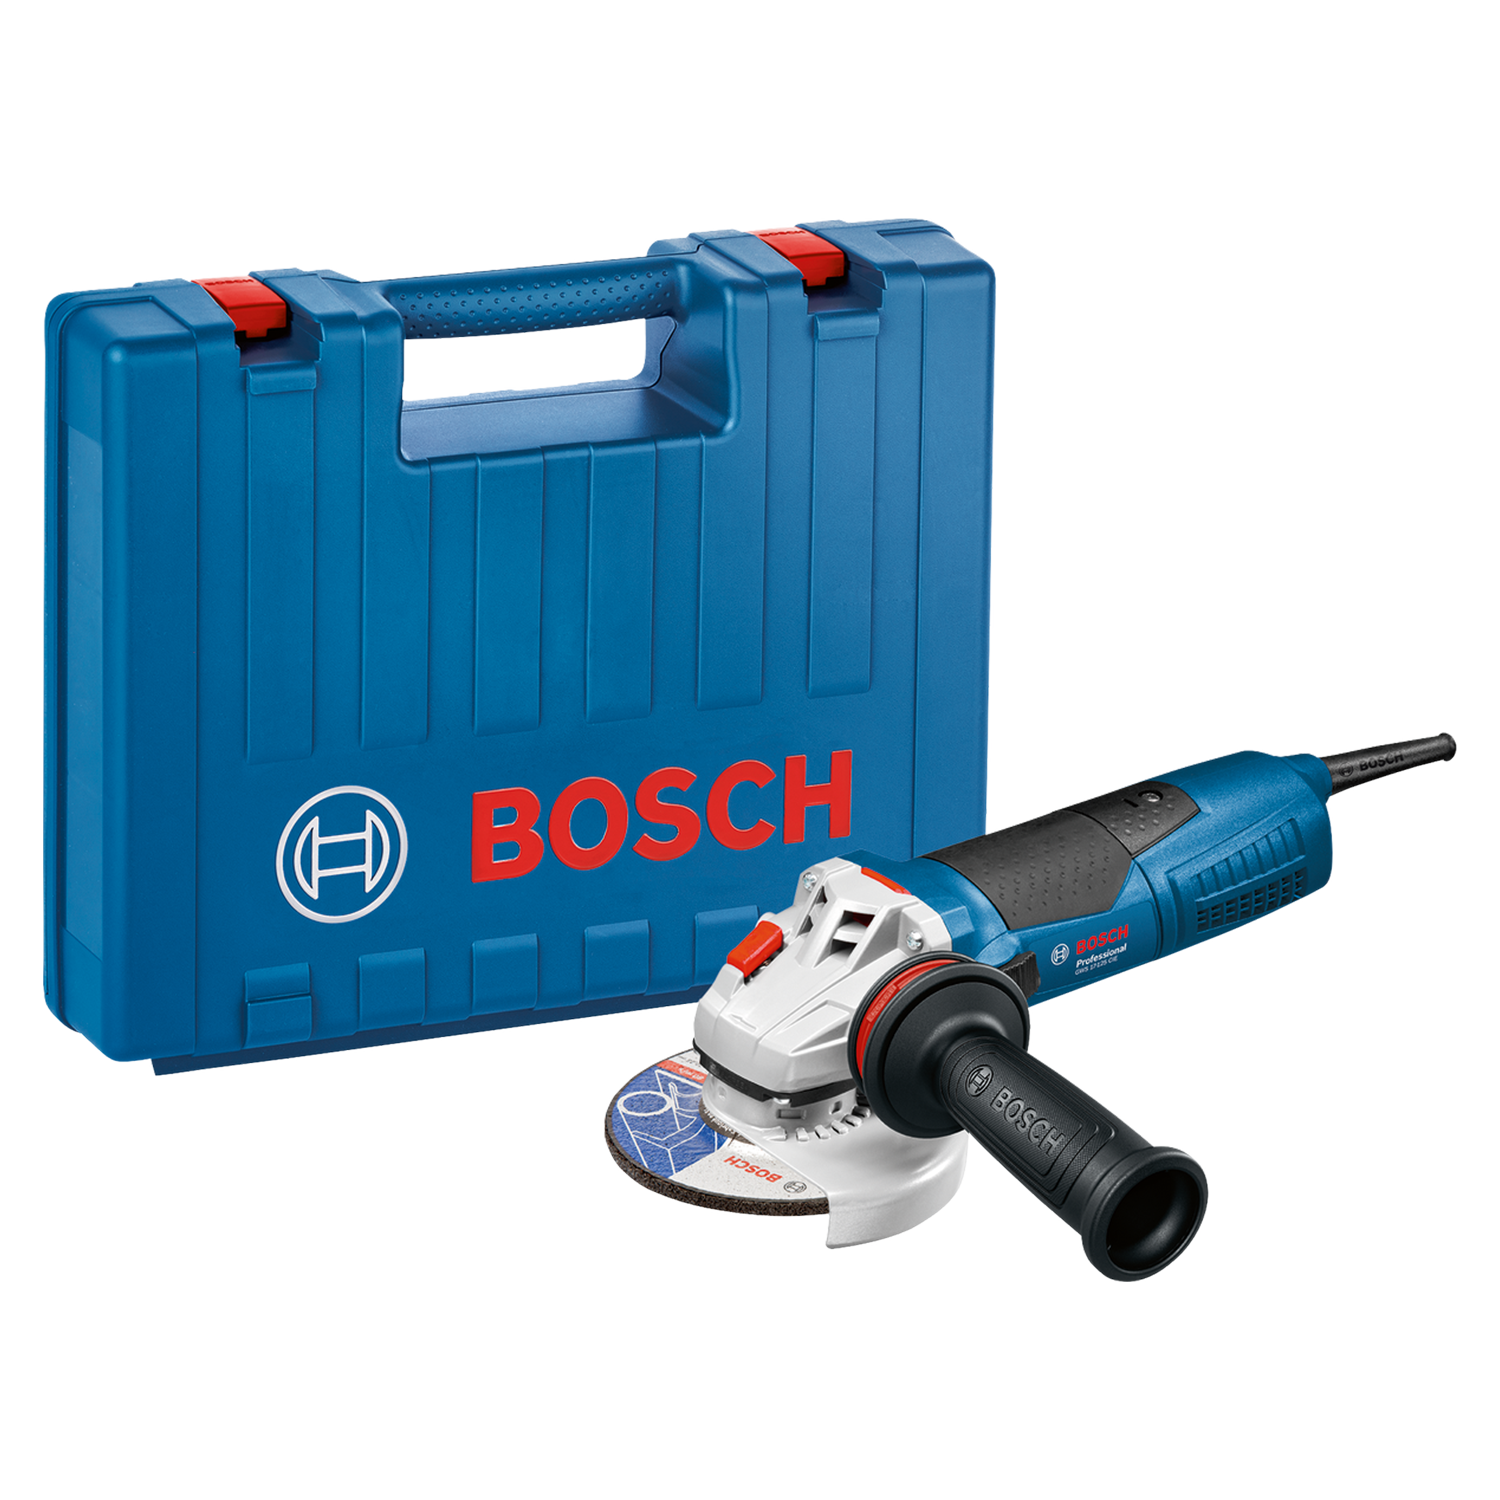 Bosch Haakse Slijper GWS 17-125 CIE: 1700W haakse slijper met een zaagblad diameter van Ø125 mm. Inclusief koffer.